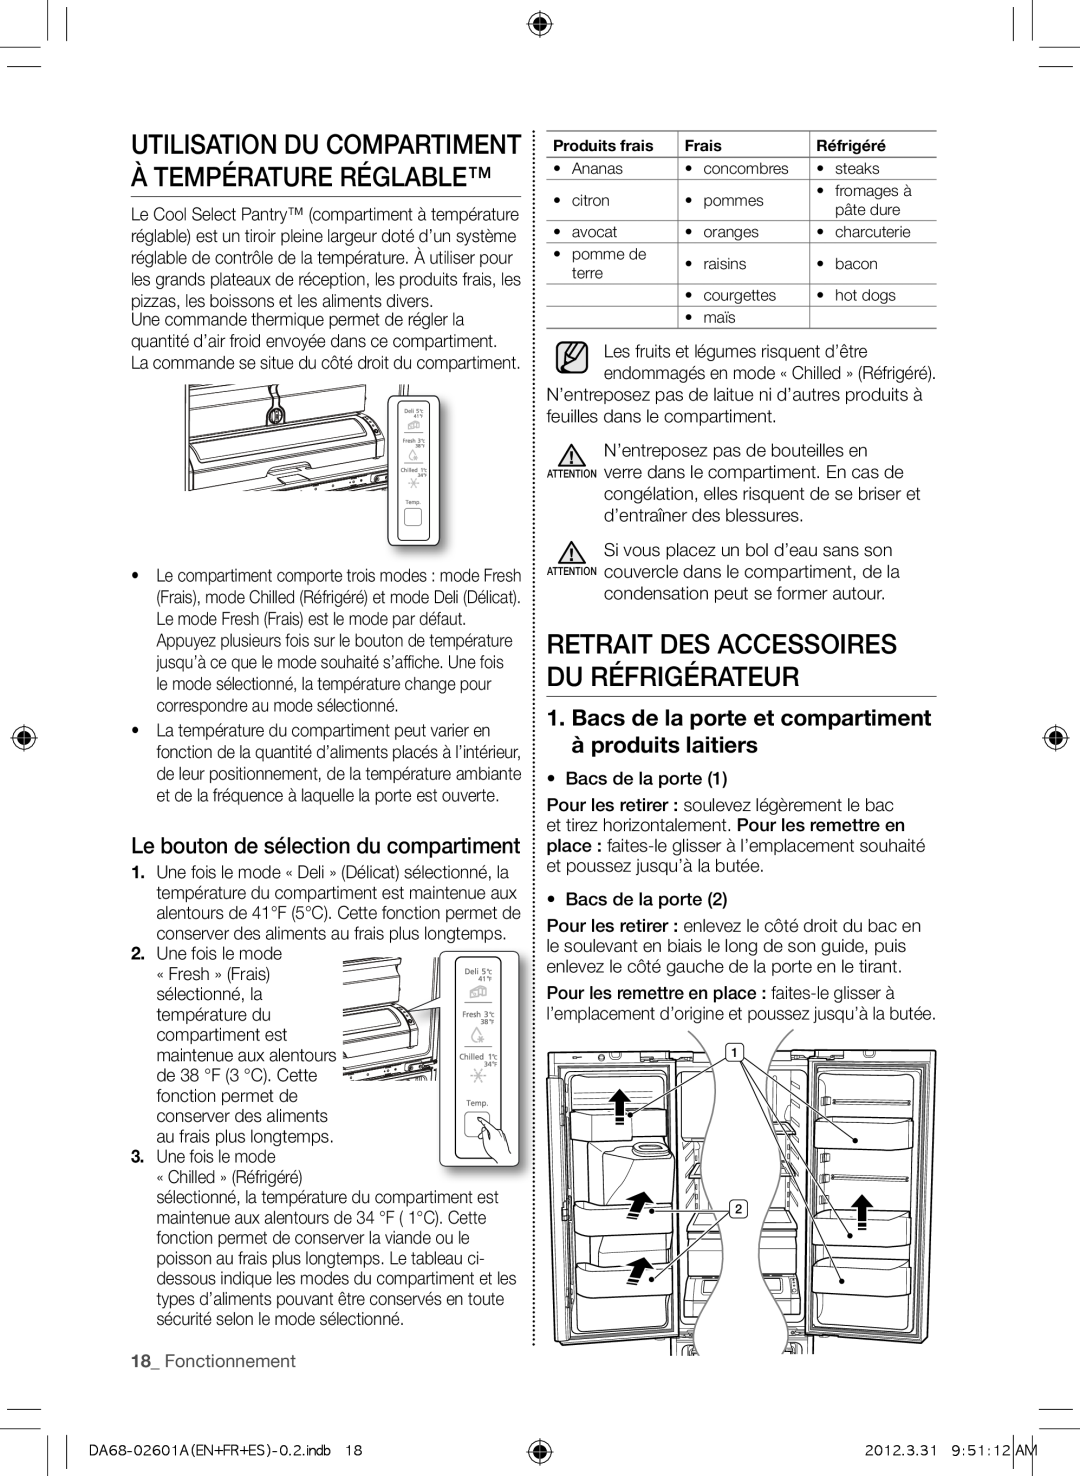 Samsung RF263BEAESP Utilisation du compartiment à température réglable, Retrait des accessoires du réfrigérateur, Frais 